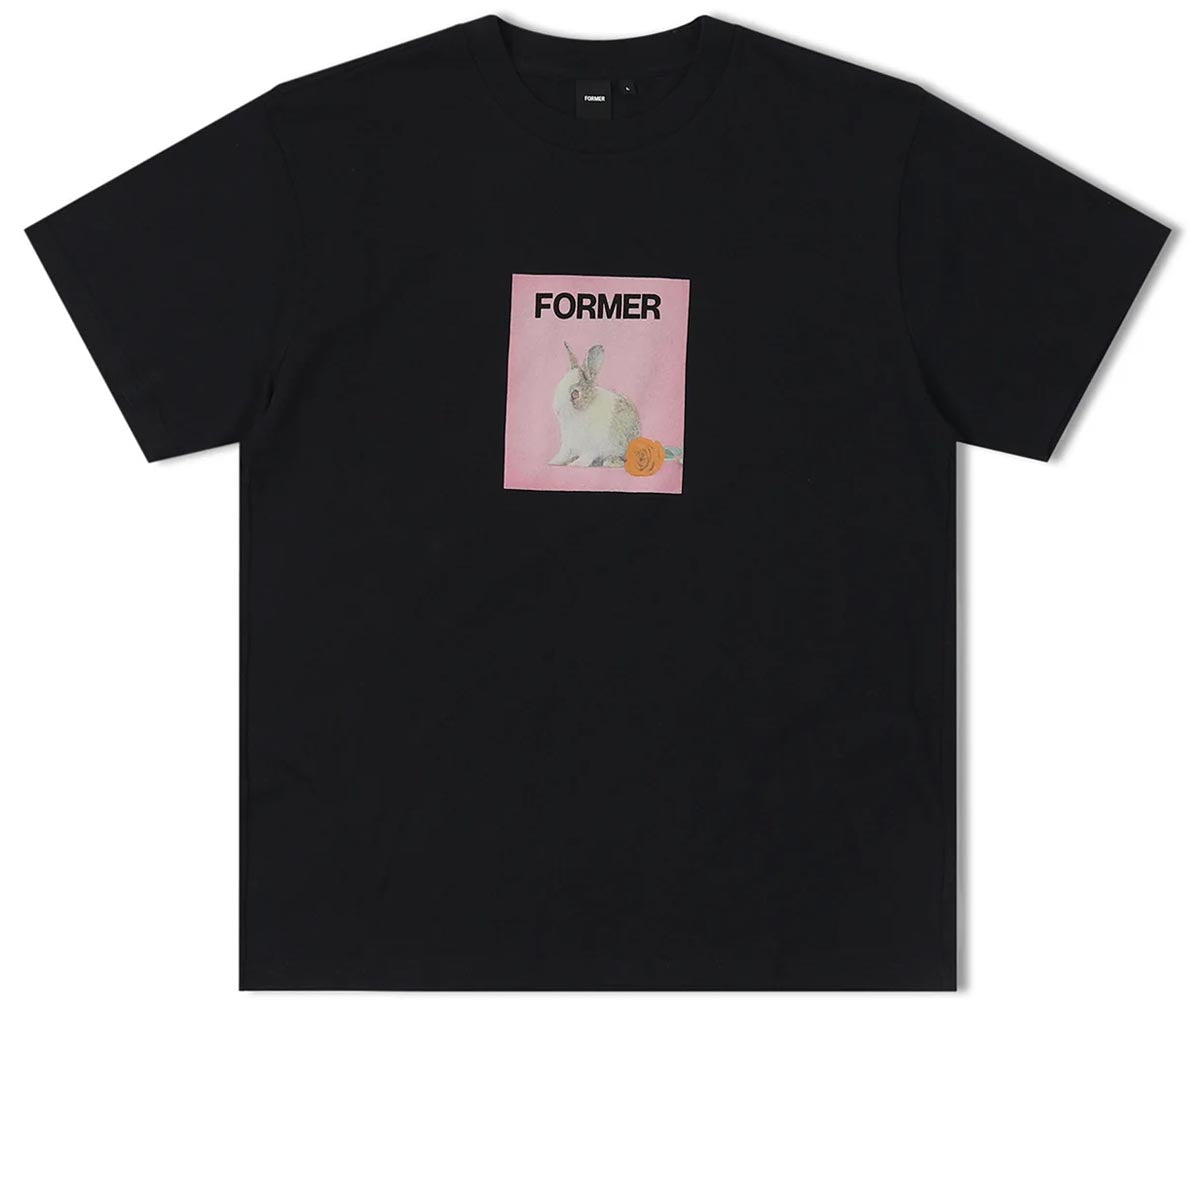 Former Valentine T-Shirt - Black image 1